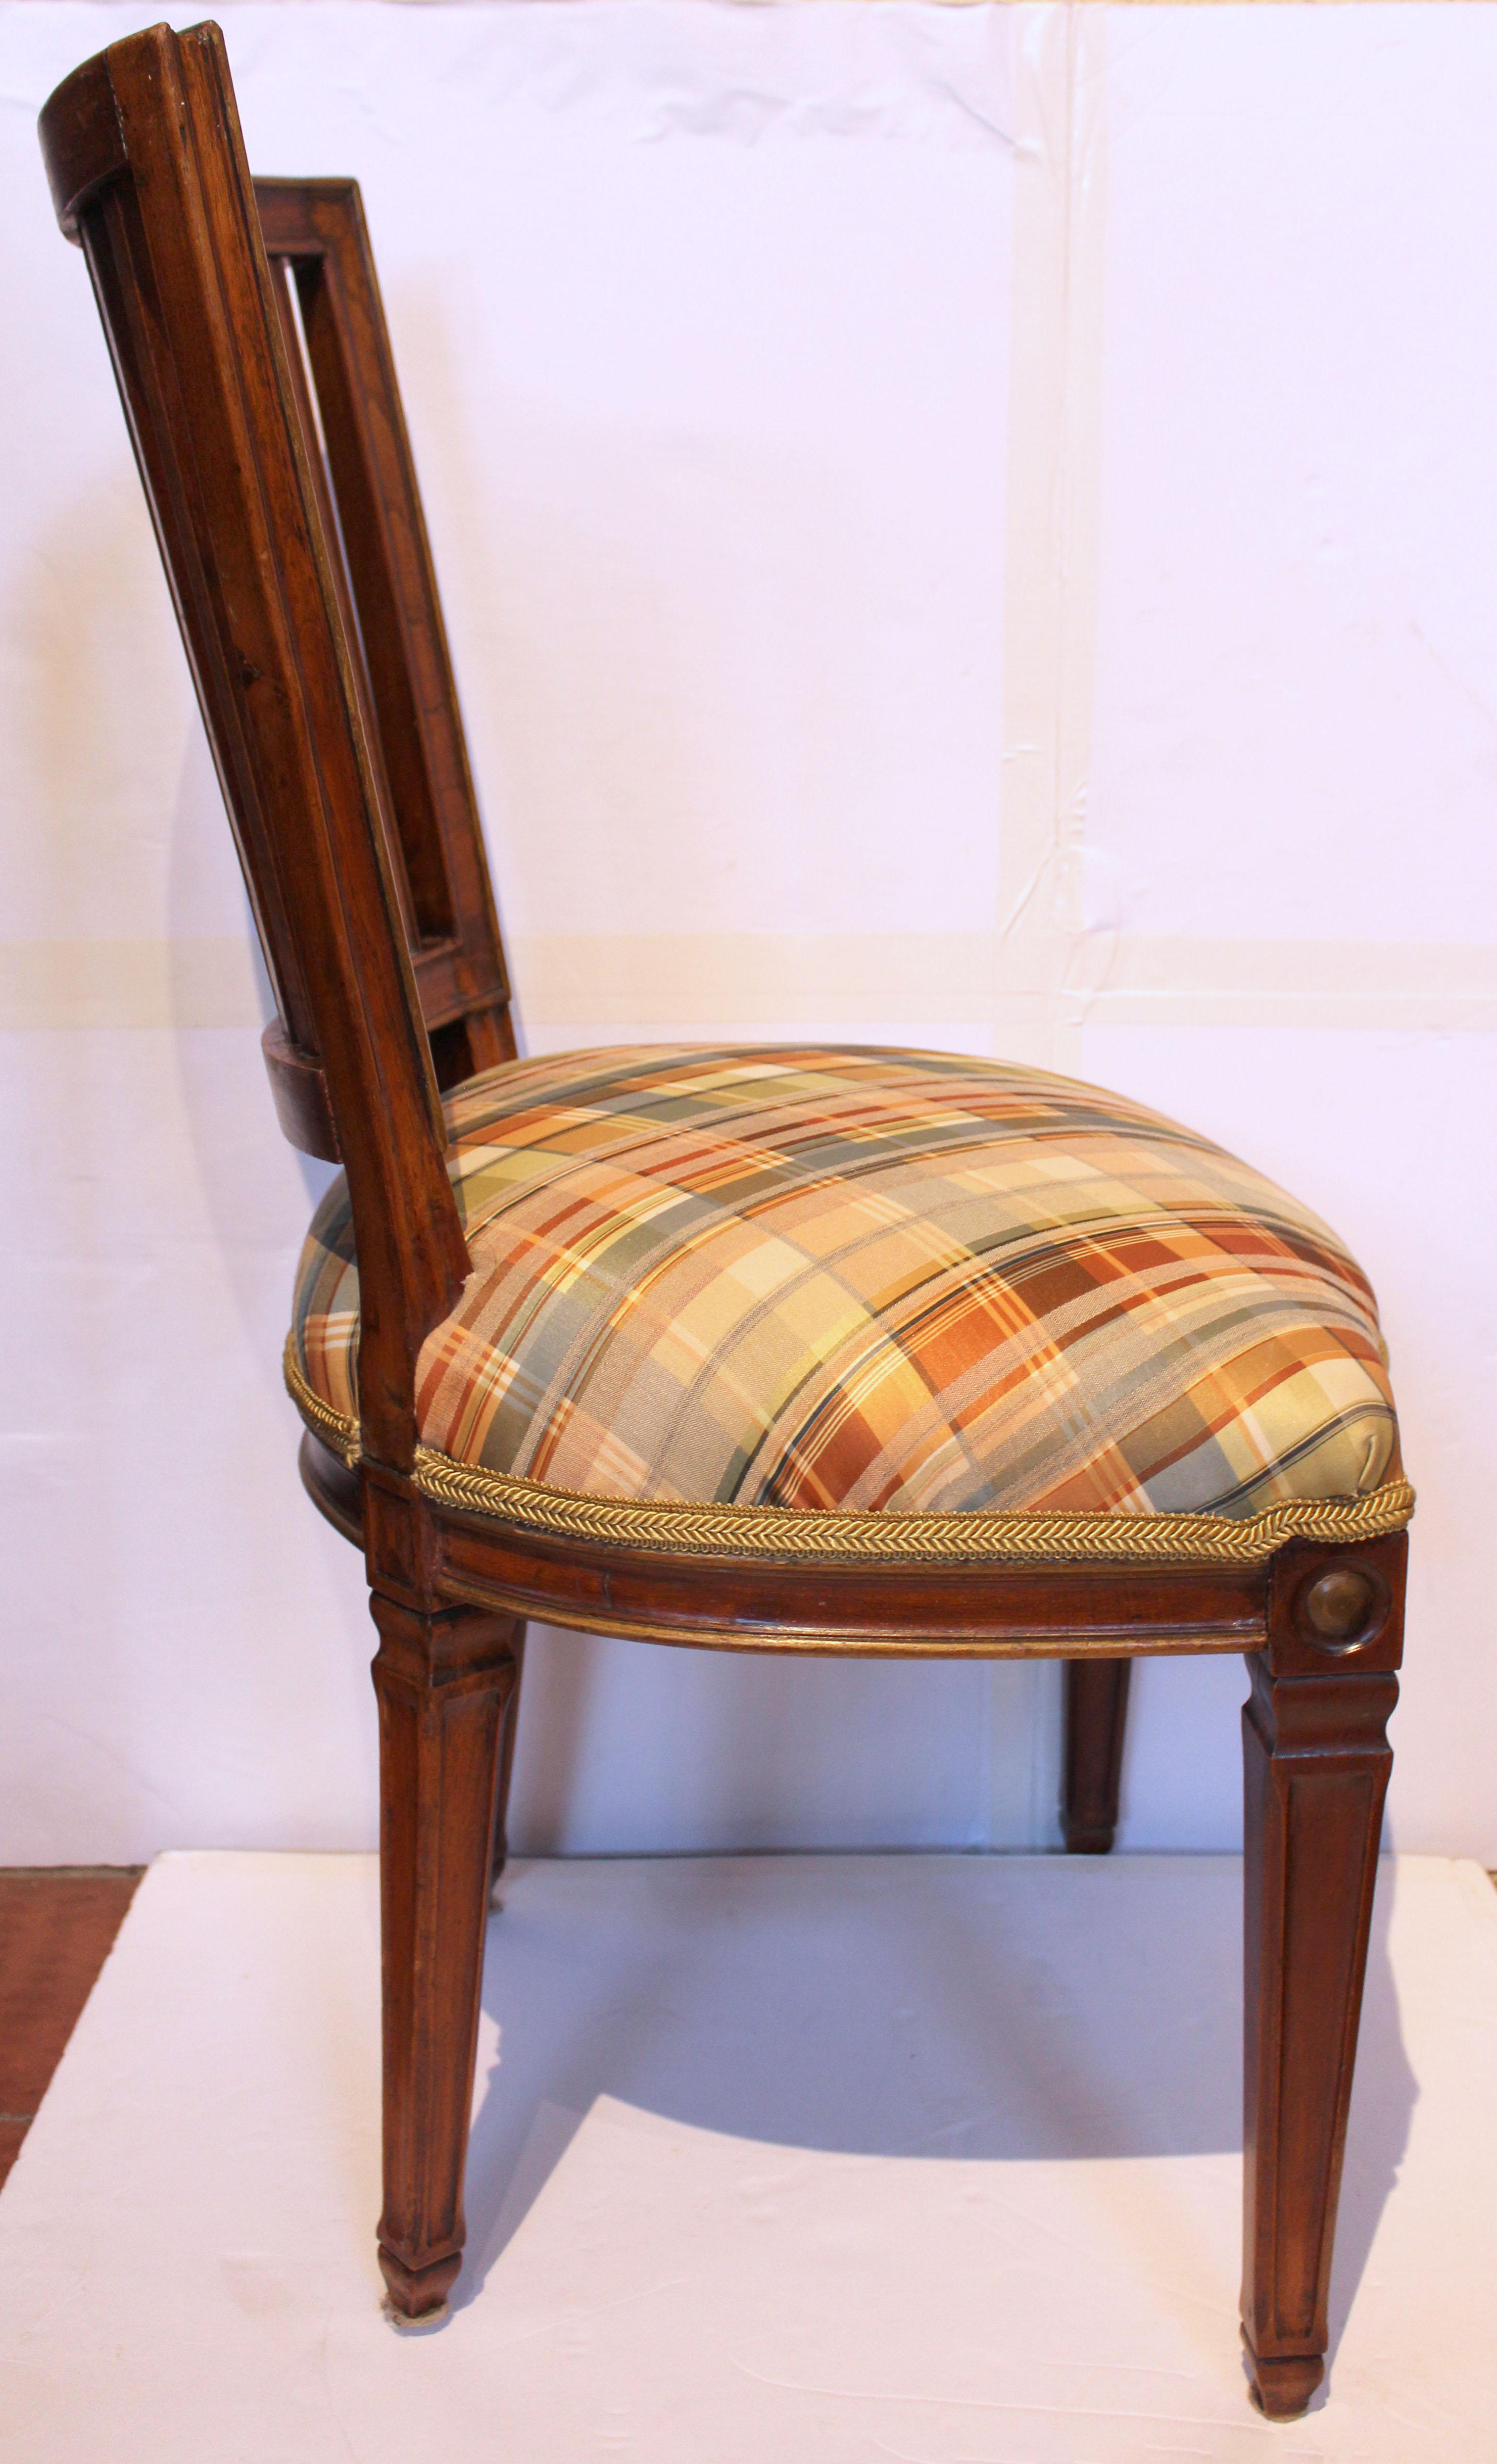 CIRCA 1870 Französischer Beistellstuhl im Stil Louis XVI. Der elegante Rahmen aus geformtem Nussbaumholz setzt sich im Design der Beine, Schürzen und der Rückenlehne fort. Geschnitzte Röschen wiederholen sich von der Kammleiste bis zur Frontschürze.